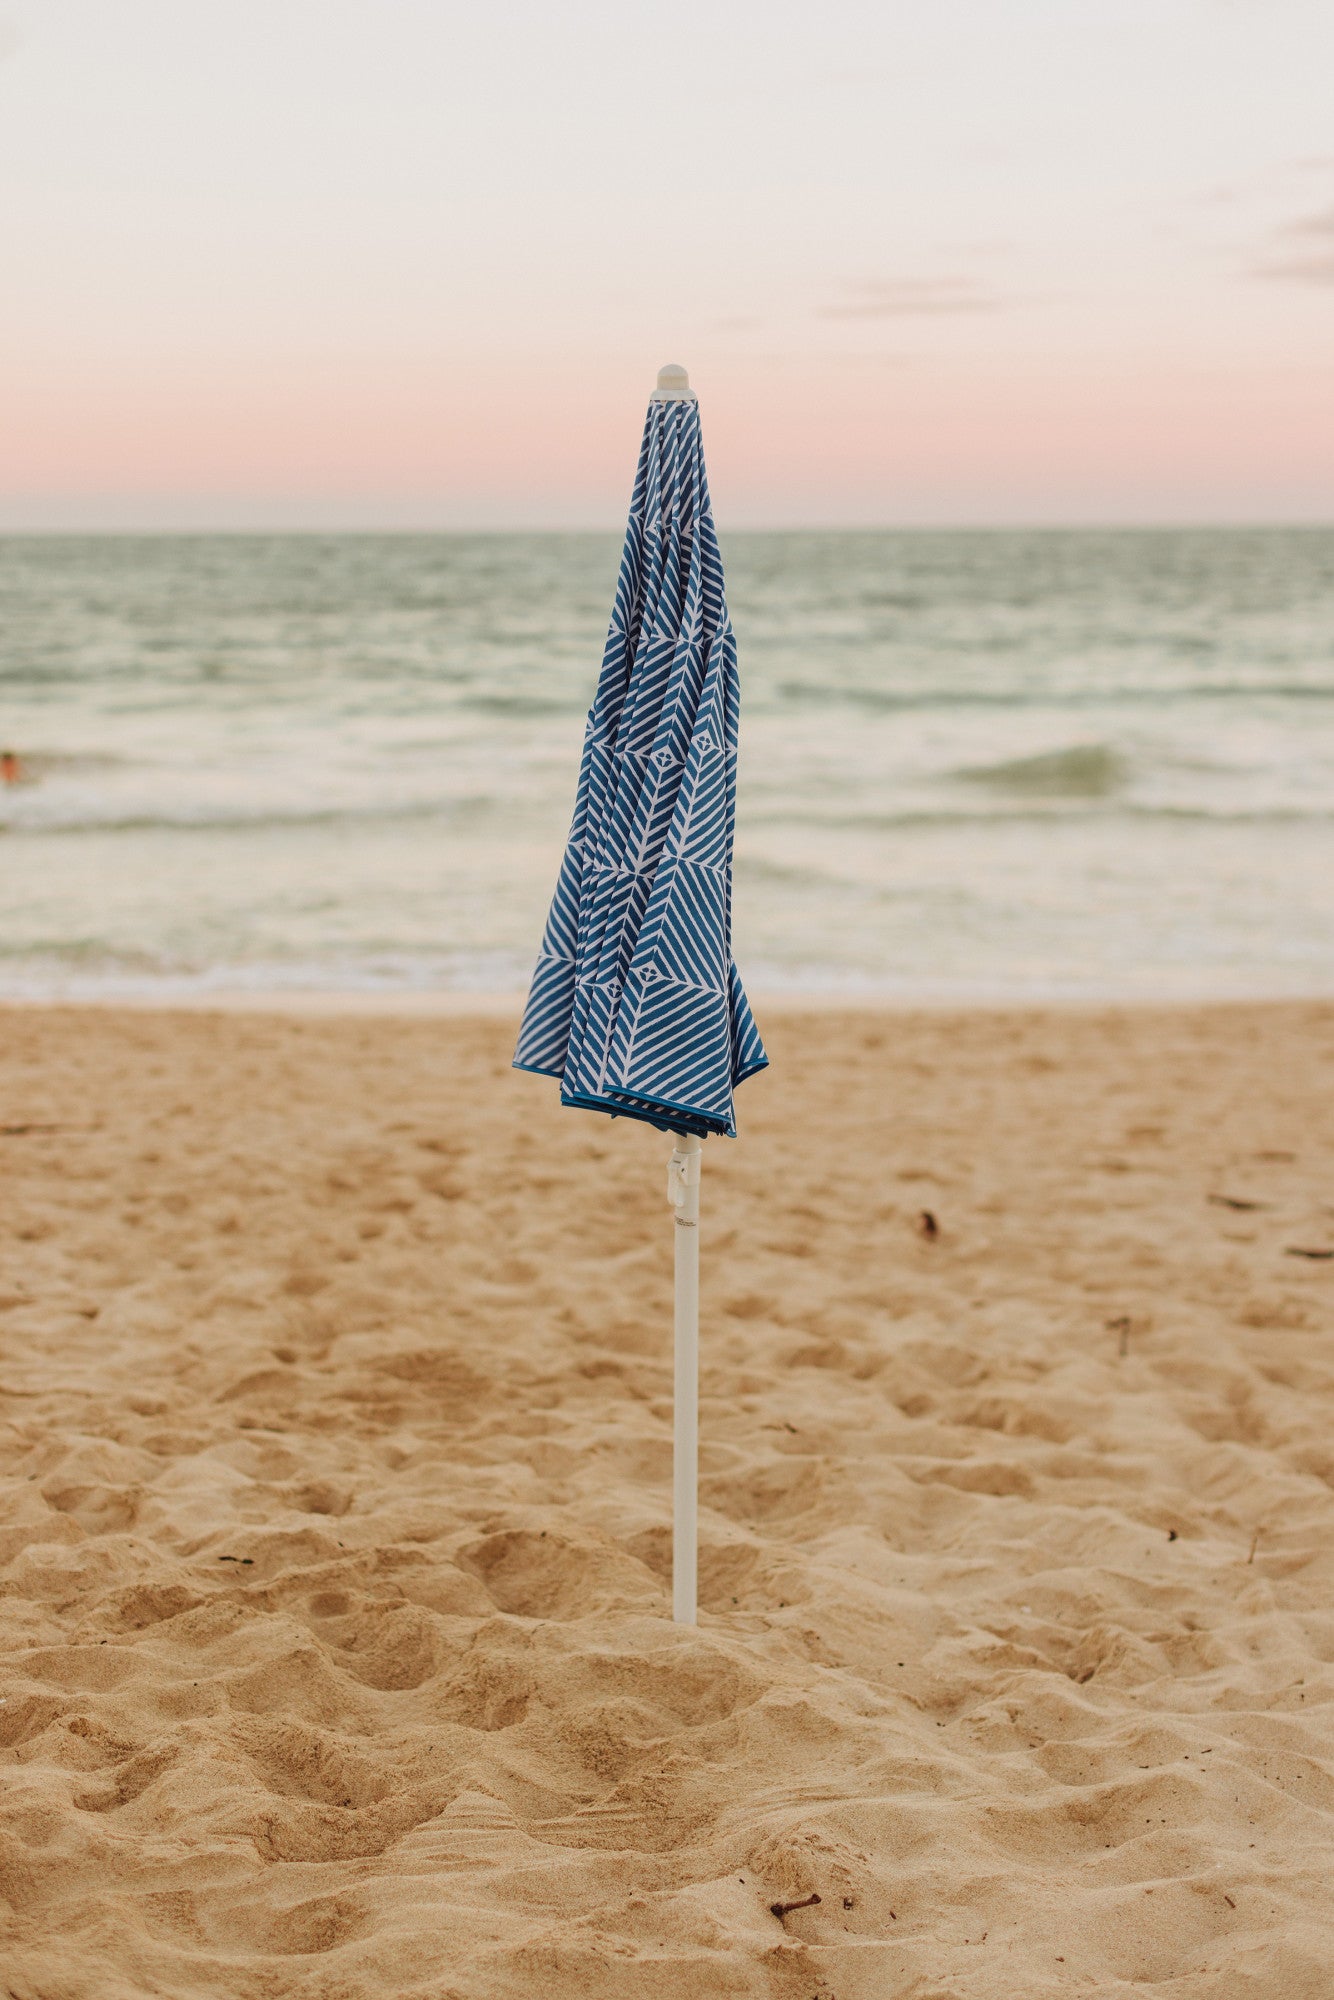 5.5 Ft. Portable Beach Umbrella